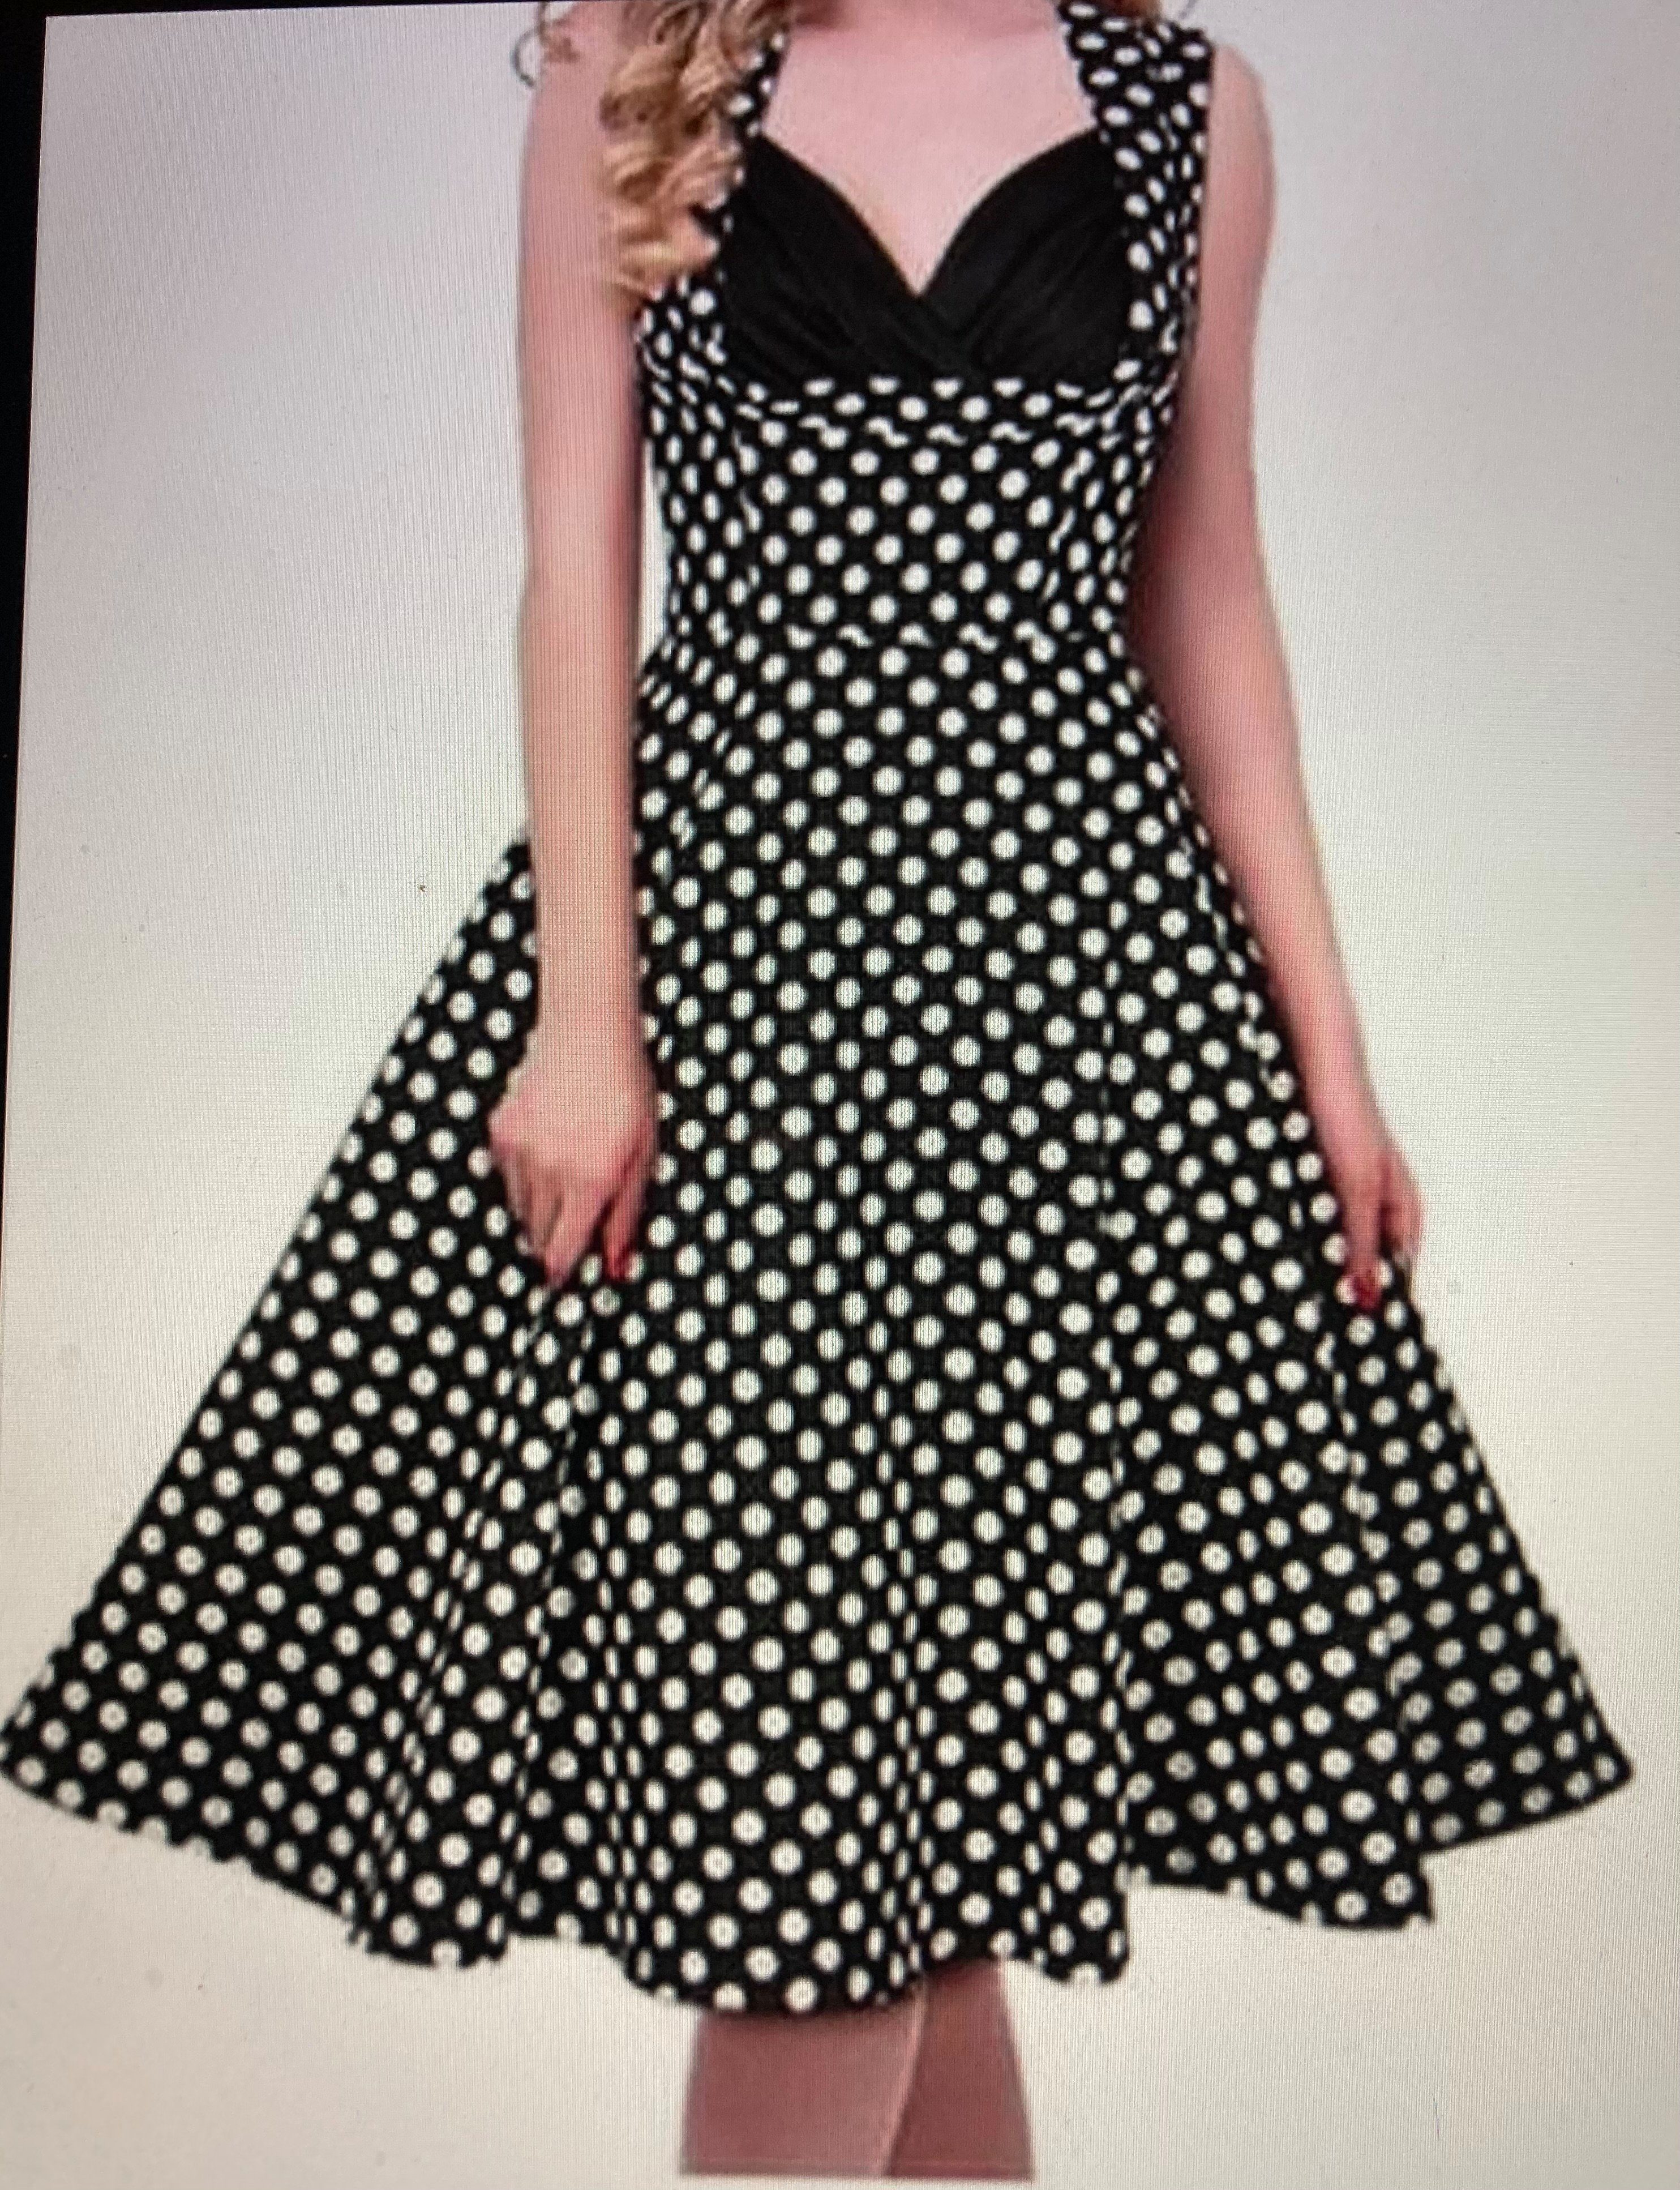 cwonlineshop Abendkleid »Rockabillykleid Punkte Polka Dot Kleid 50er Jahre  Pin up Vintage Kleid« online kaufen | OTTO